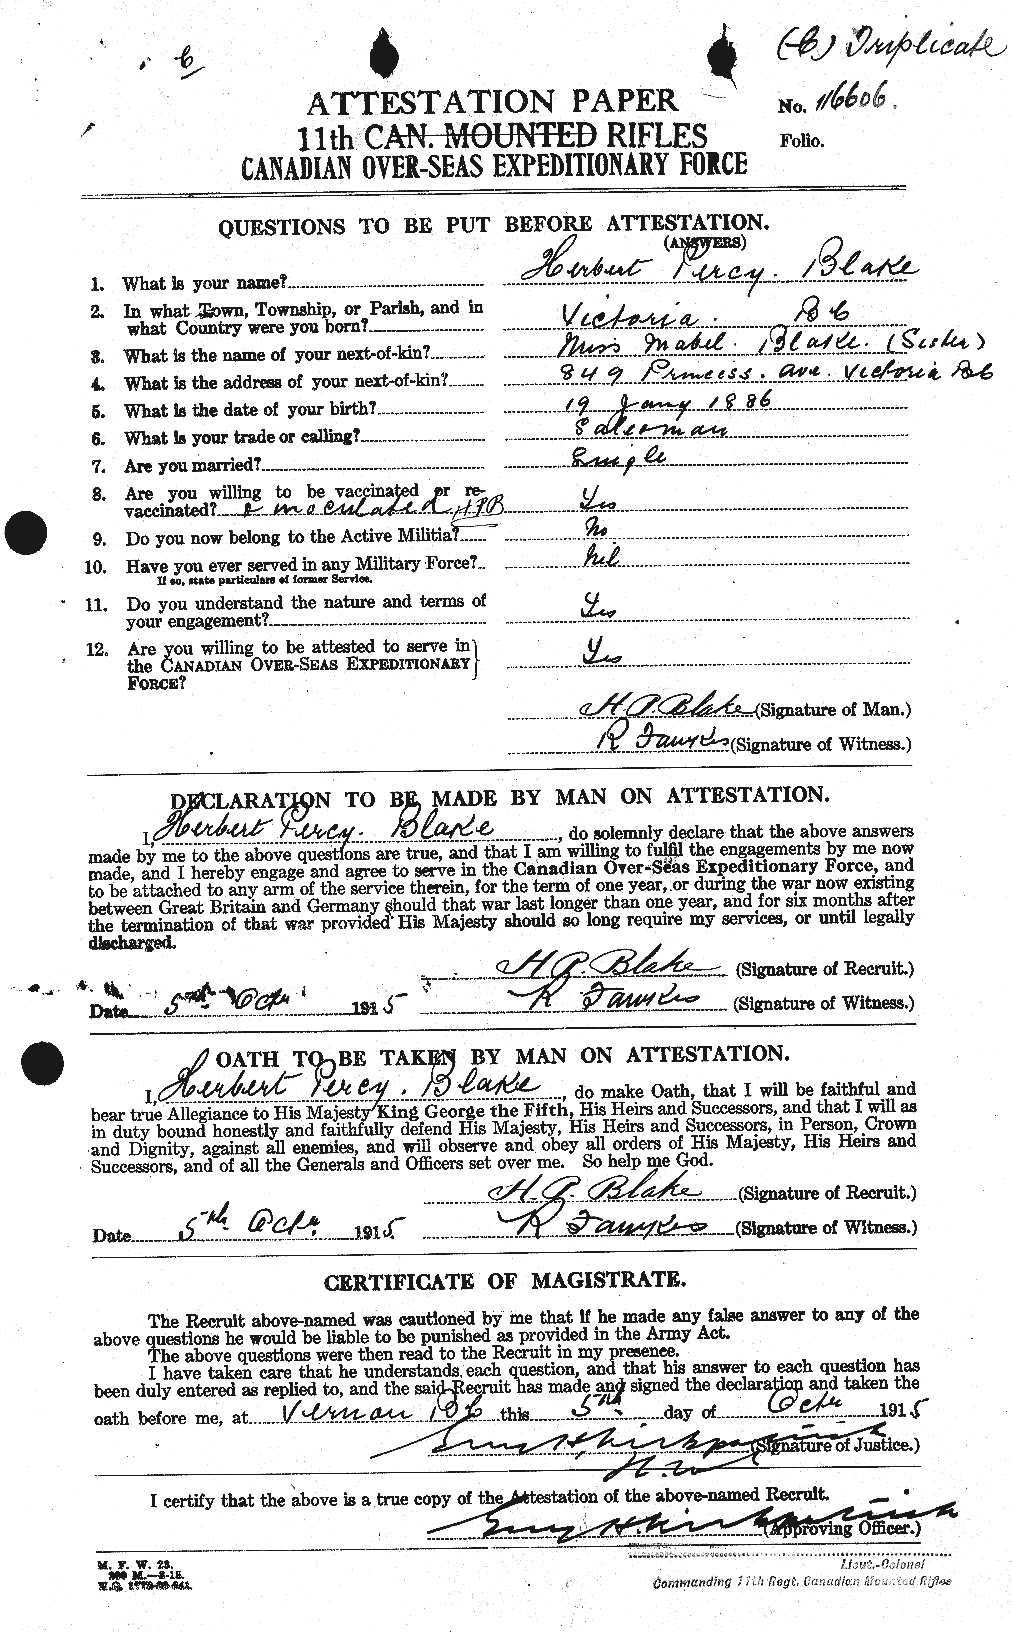 Dossiers du Personnel de la Première Guerre mondiale - CEC 245894a